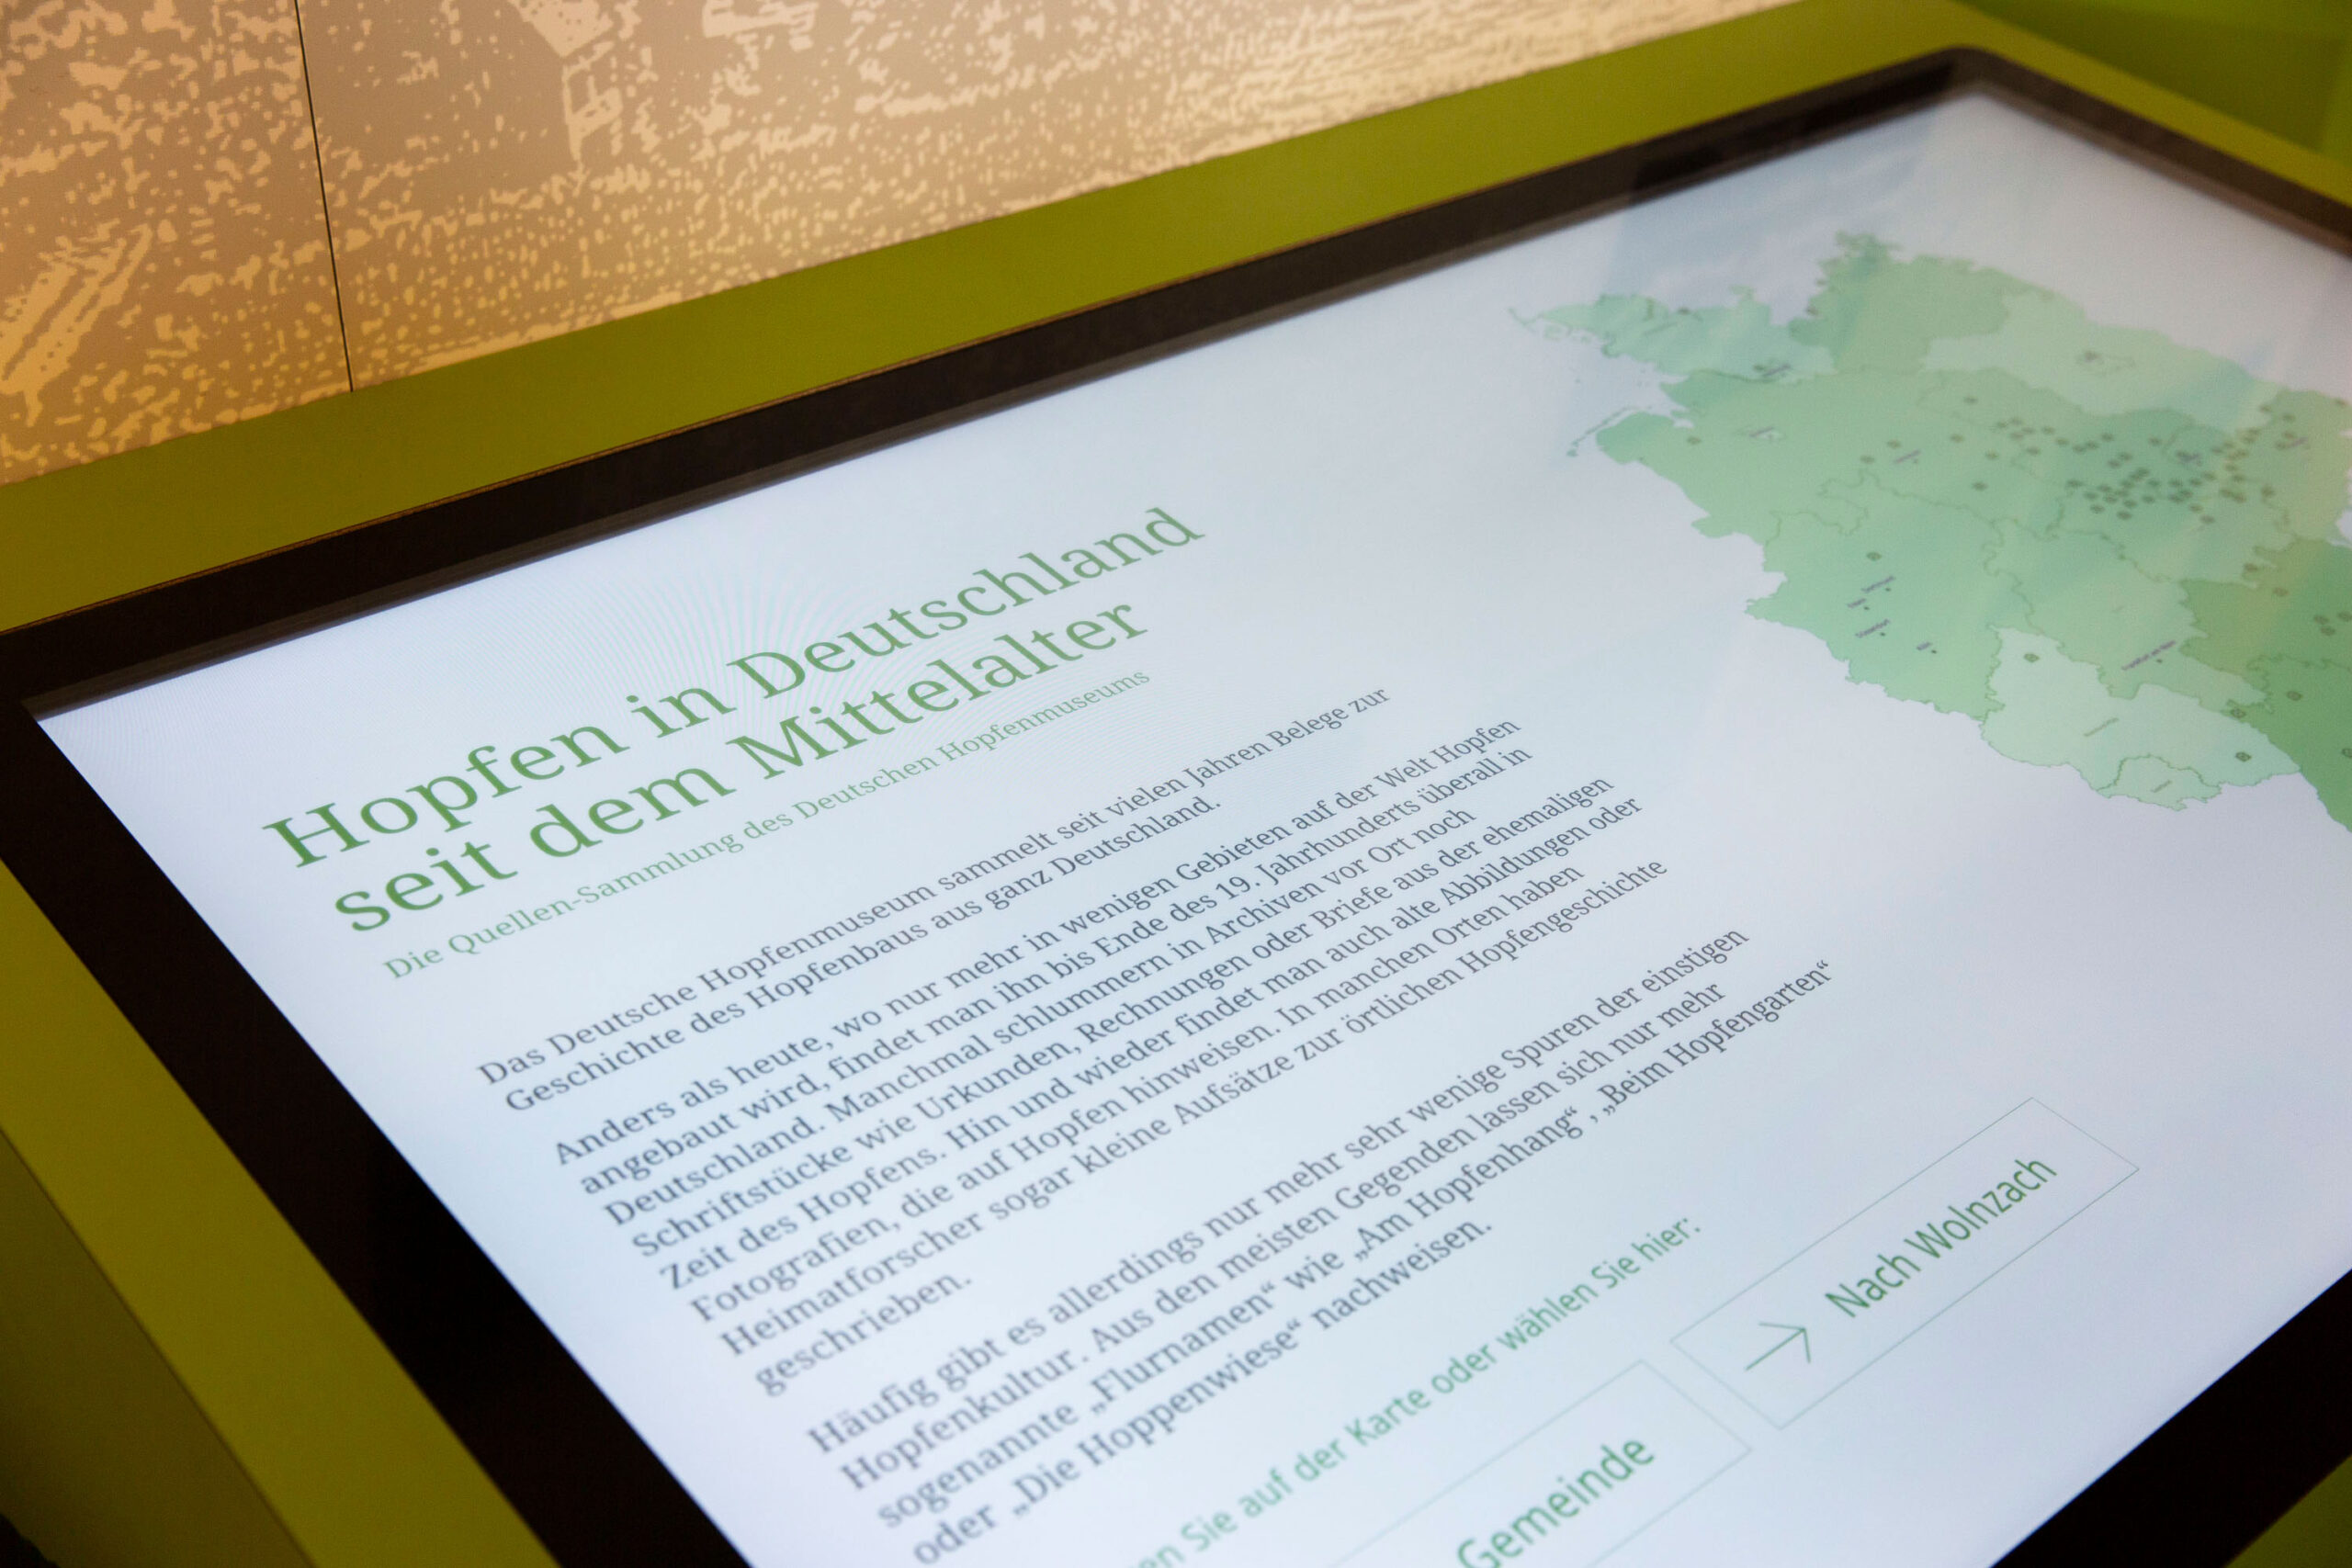 Interaktive Landkarte zum Hopfenbau in Deutschland